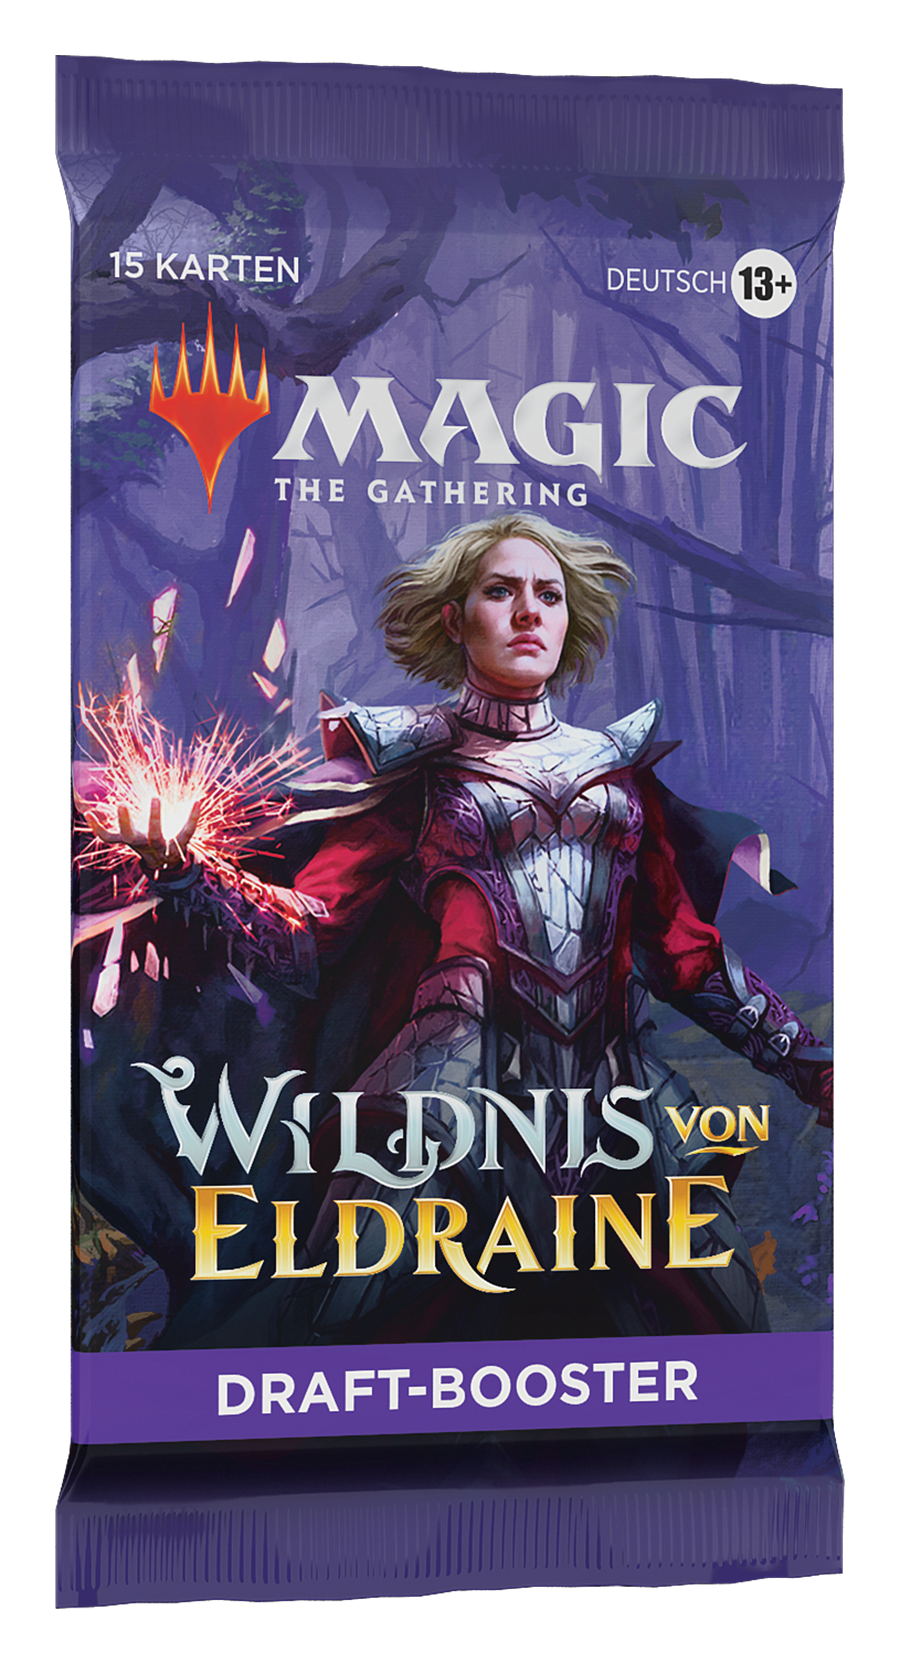 Magic: The Gathering - Die Wildnis von Eldraine - Draft Booster